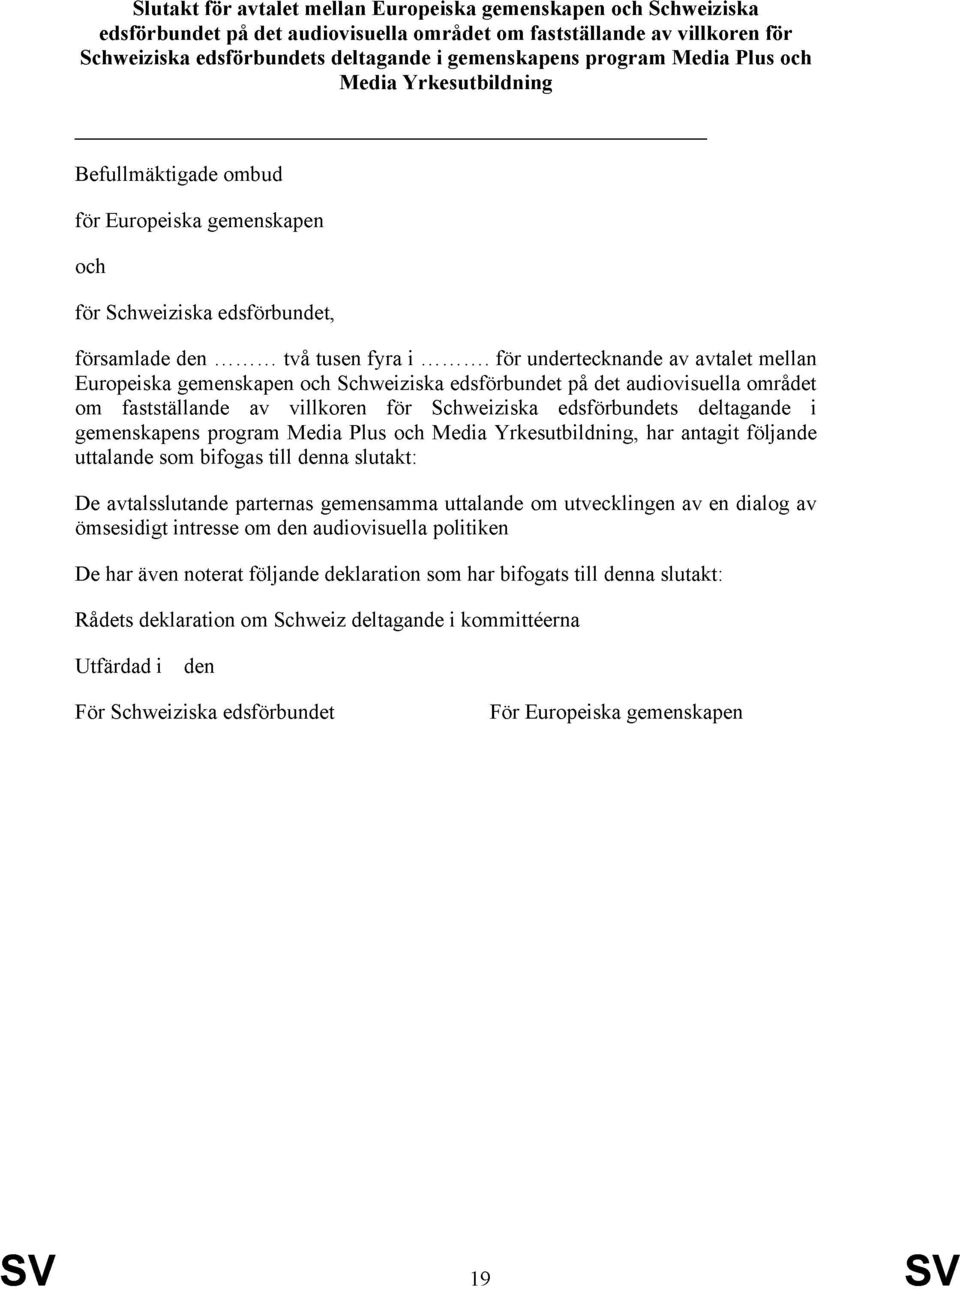 för undertecknande av avtalet mellan Europeiska gemenskapen och Schweiziska edsförbundet på det audiovisuella området om fastställande av villkoren för Schweiziska edsförbundets deltagande i